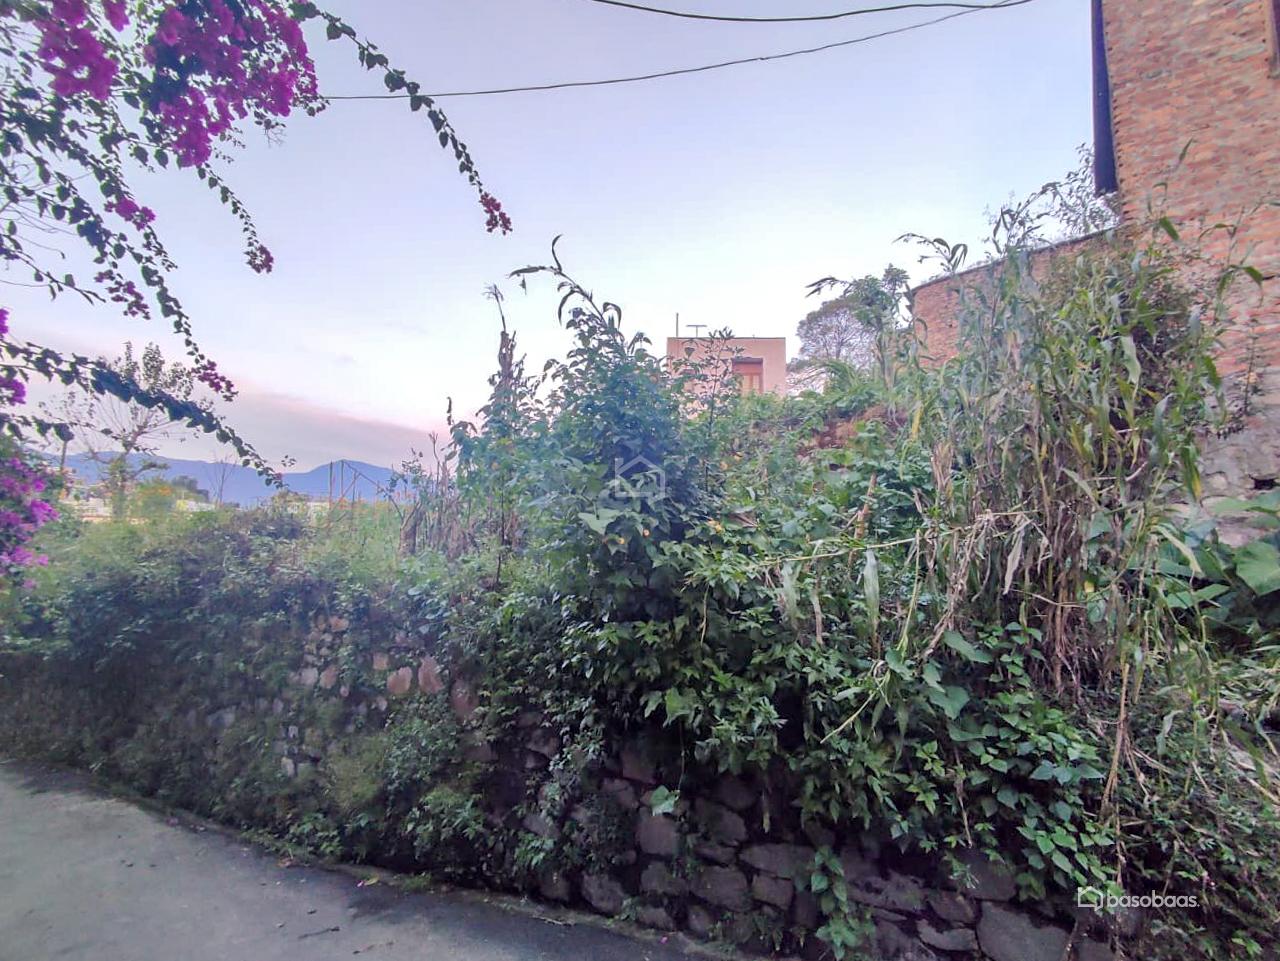 Residental Land : Land for Sale in Bansbari, Kathmandu Thumbnail